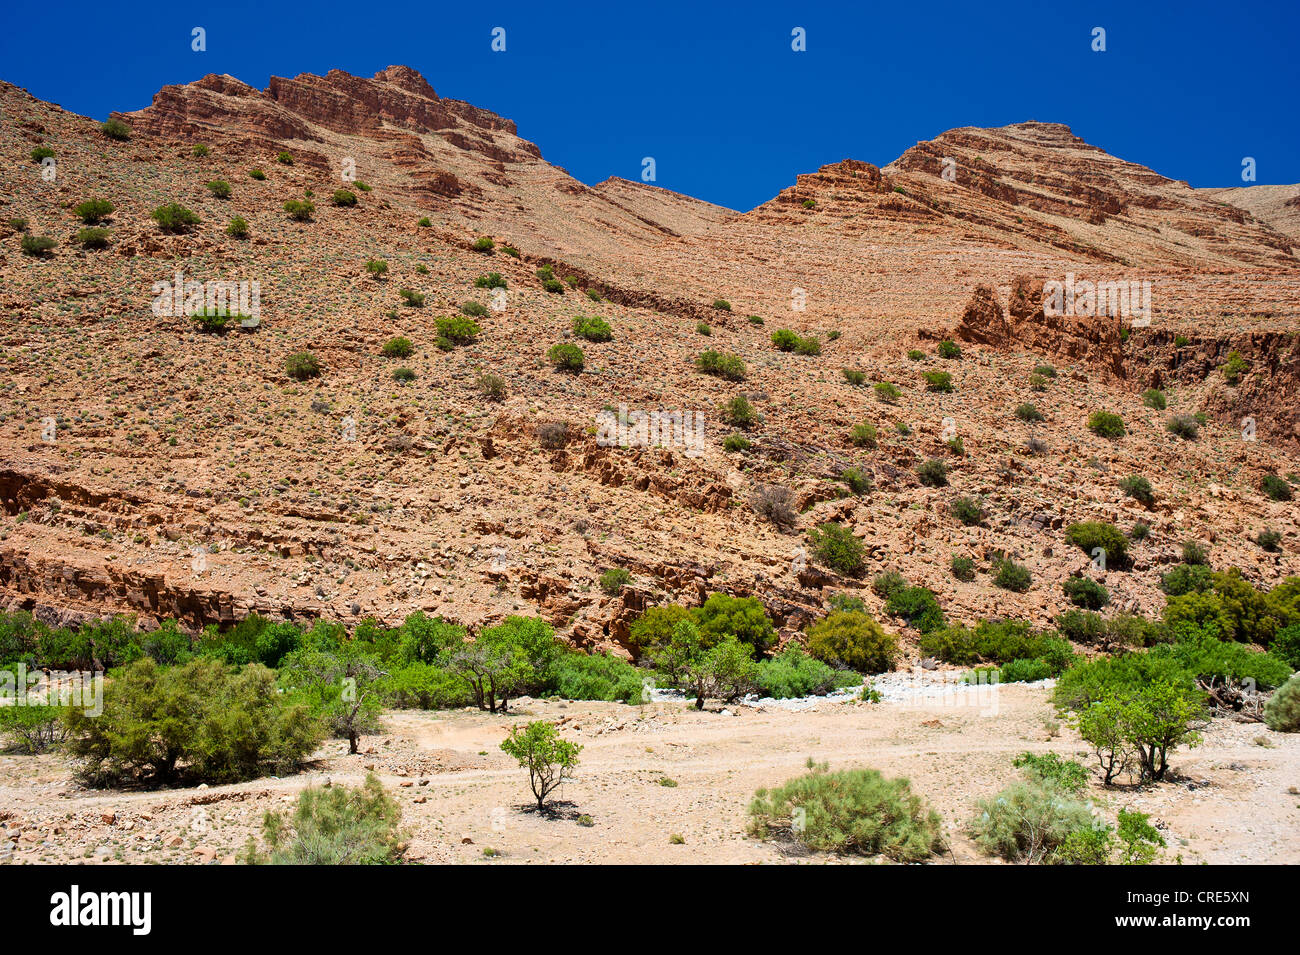 Paysage rocheux avec des arbres et arbustes poussant dans un lit de rivière à sec, l'Ait Mansour Valley, Anti-Atlas, le sud du Maroc Banque D'Images